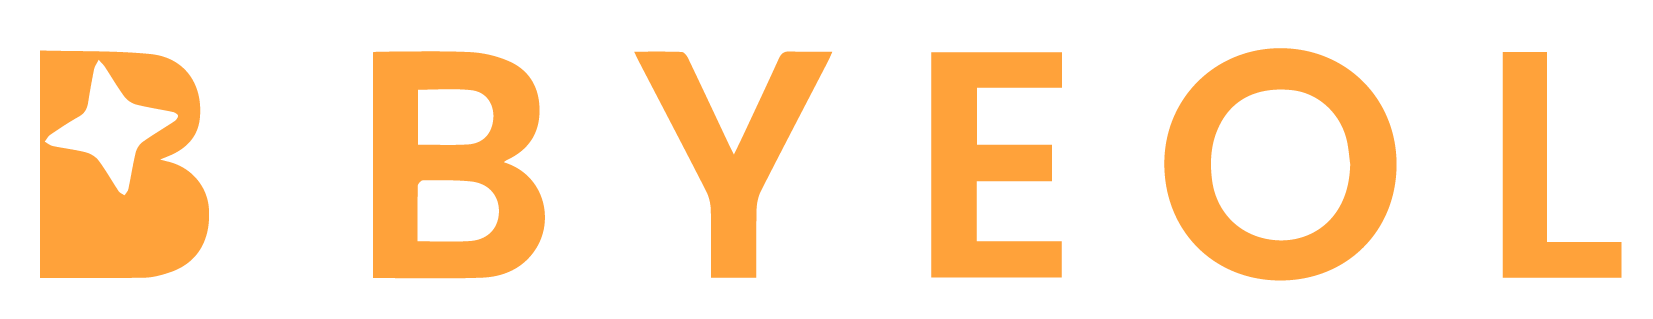 bbyeol-logo.png